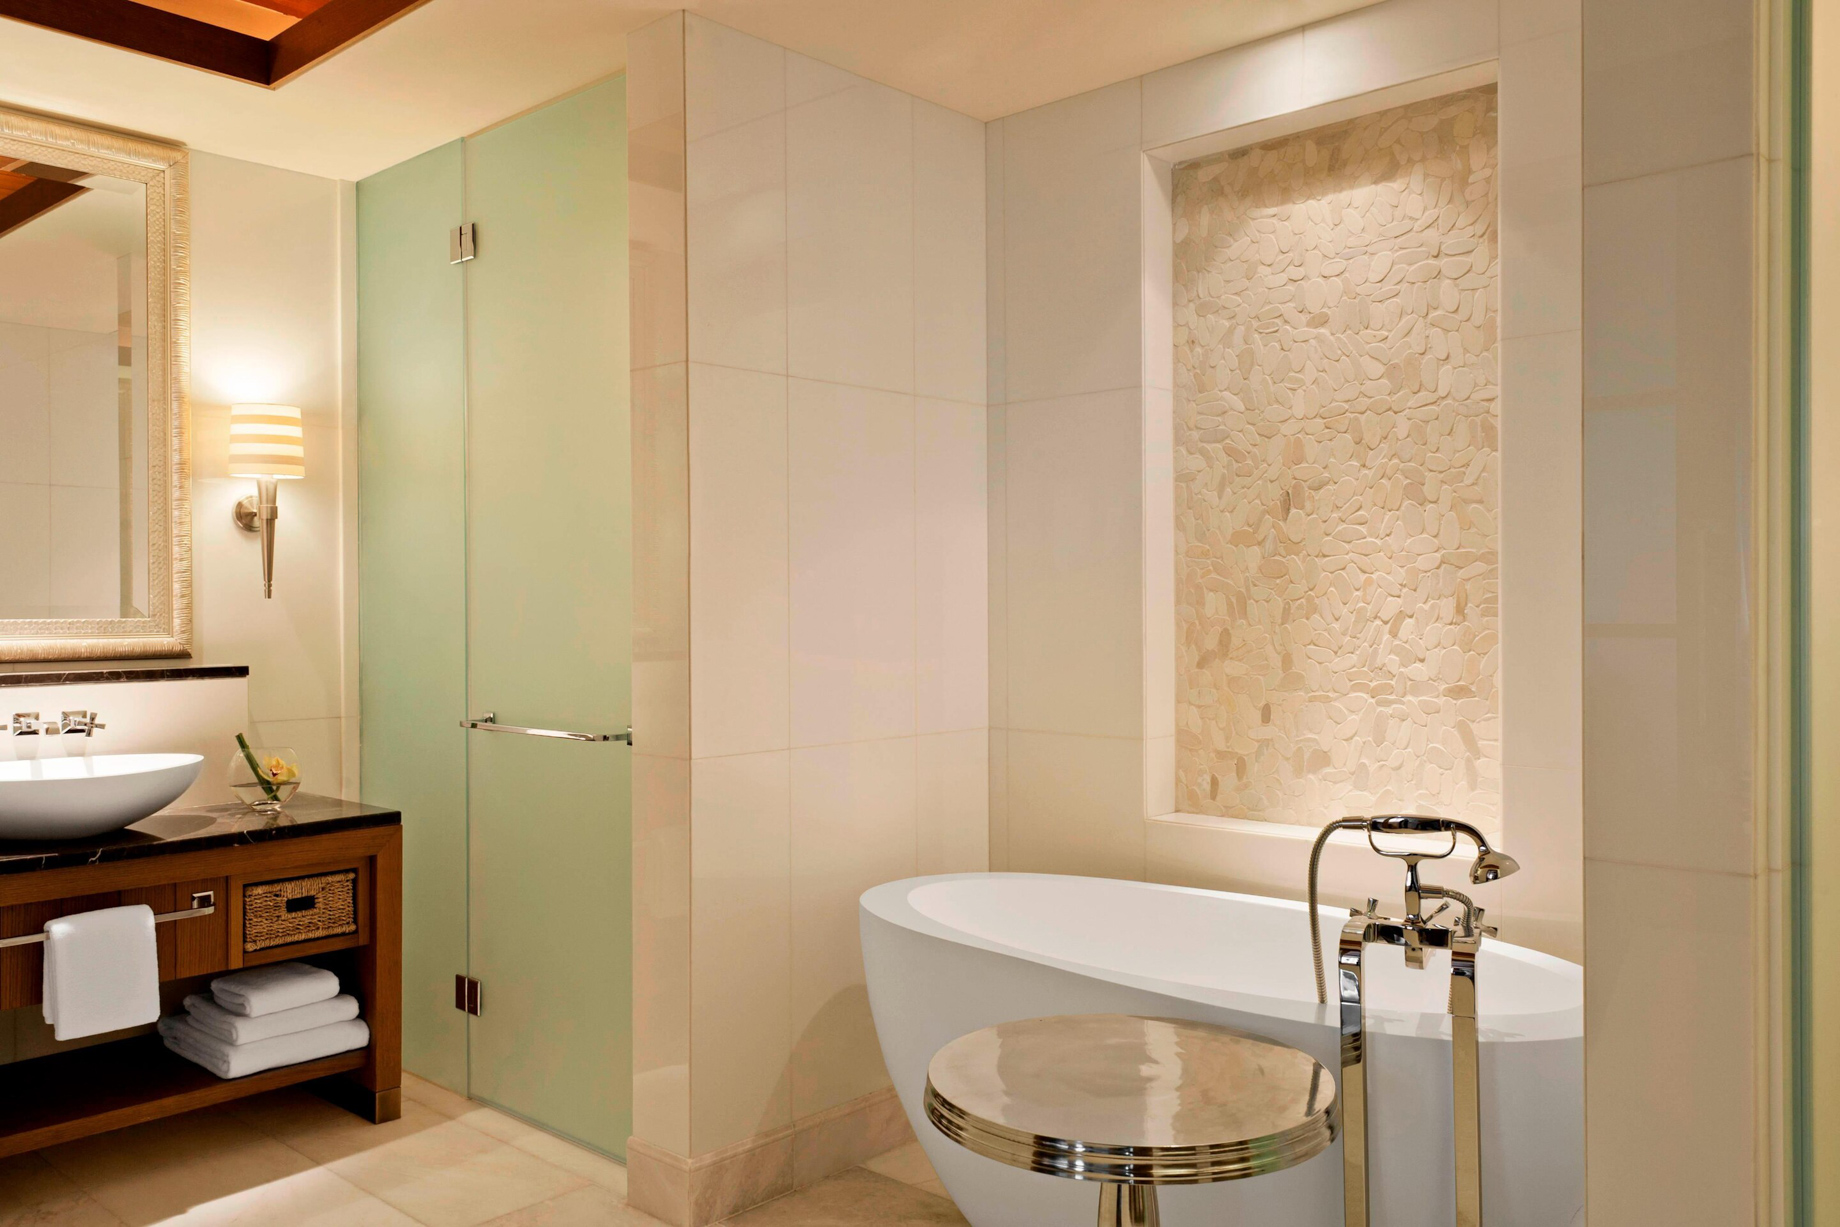 The St. Regis Saadiyat Island Resort – Abu Dhabi, UAE – St. Regis Suite Bathroom Tub